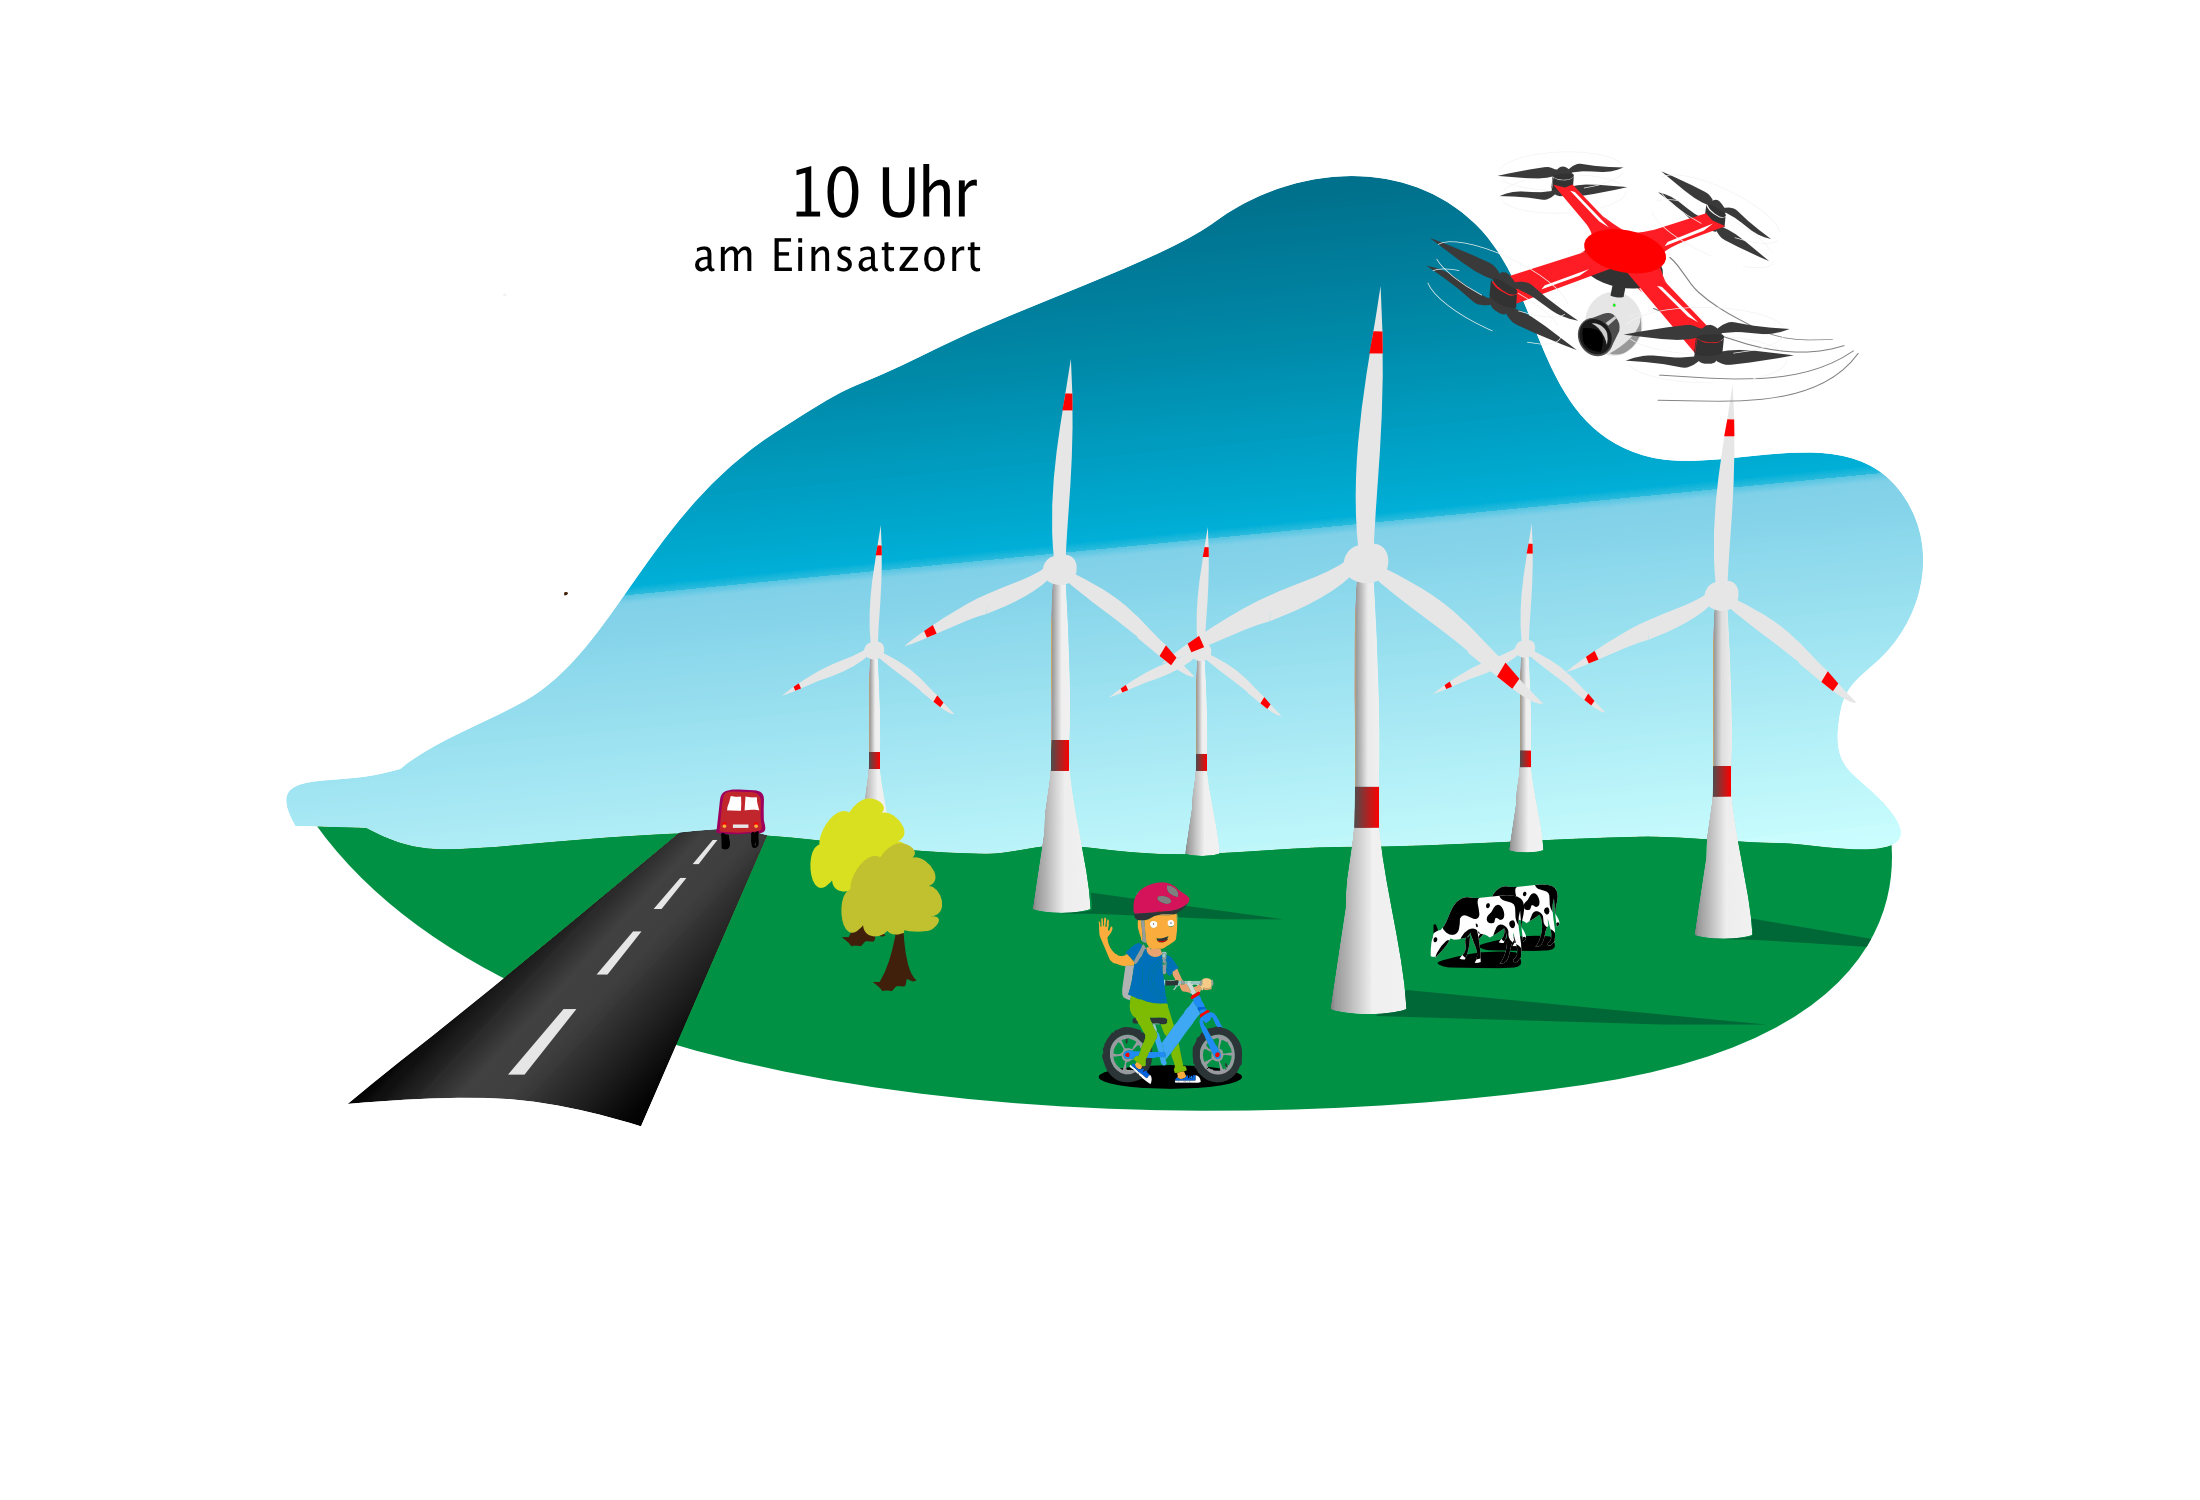 Comic-Zeichnung einer Drohne, die um 10 Uhr über einen Windpark, den Einsatzort, fliegt. Zwischen den Windkraftanlagen stehen auf der Wiese Bäume und Kühe und ein winkendes Kind, das auf einem Fahrrad fährt. Links neben dem Windpark führt eine Straße entlang, auf der ein Auto fährt.